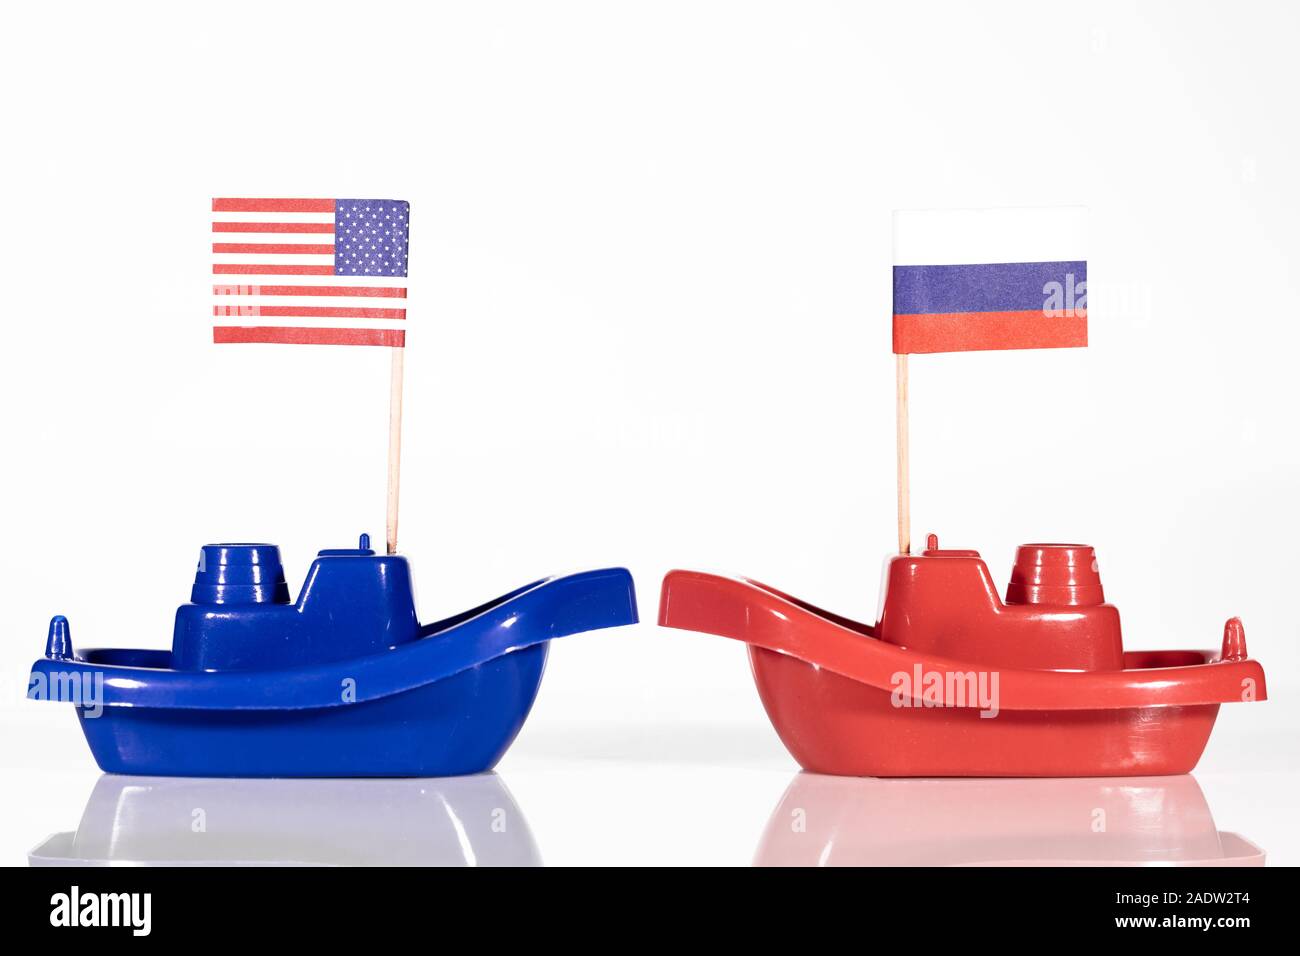 Le navi con le bandiere degli Stati Uniti e della Russia o della Federazione russa di fronte a uno sfondo bianco Foto Stock